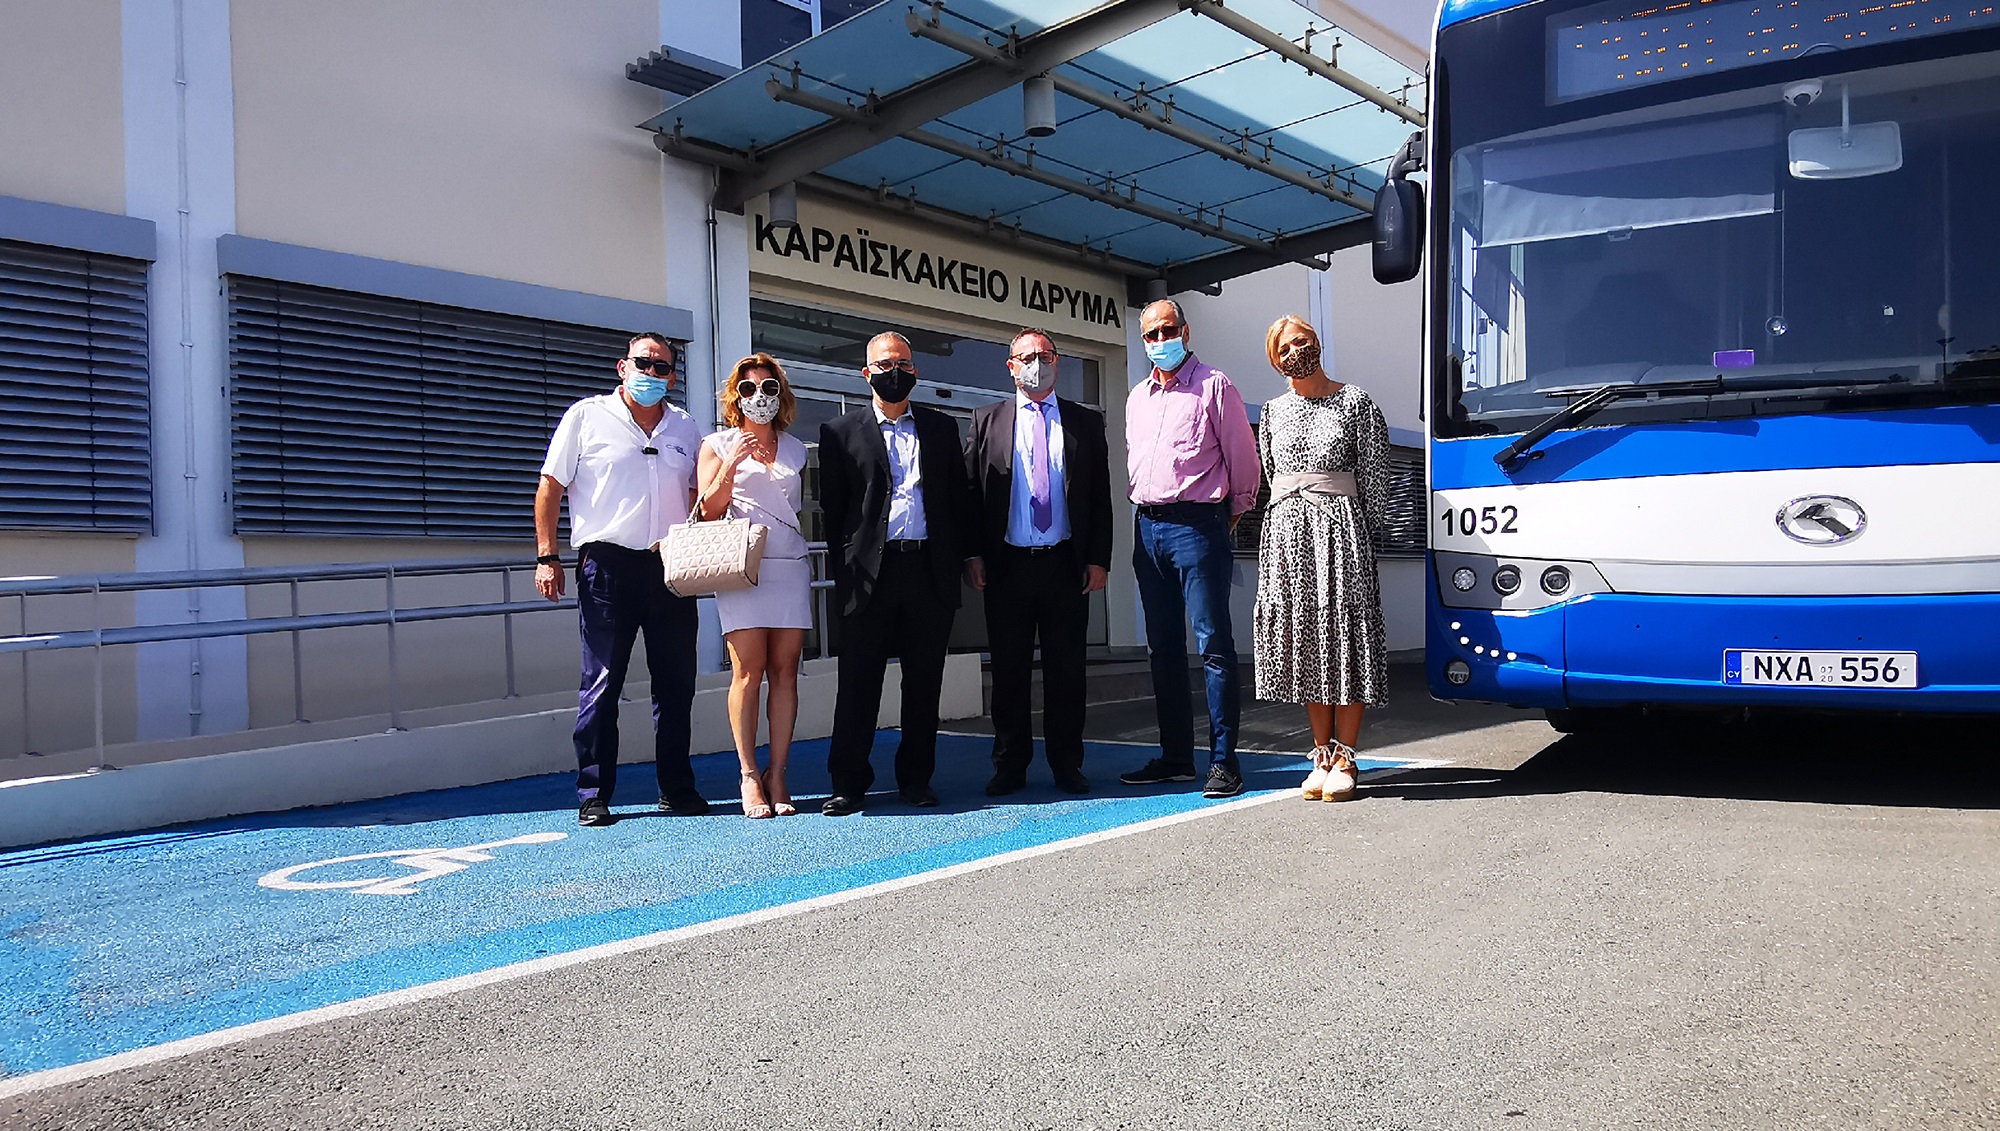 Η Cyprus Public Transport προσέφερε €10.650 στο Καραϊσκάκειο Ίδρυμα